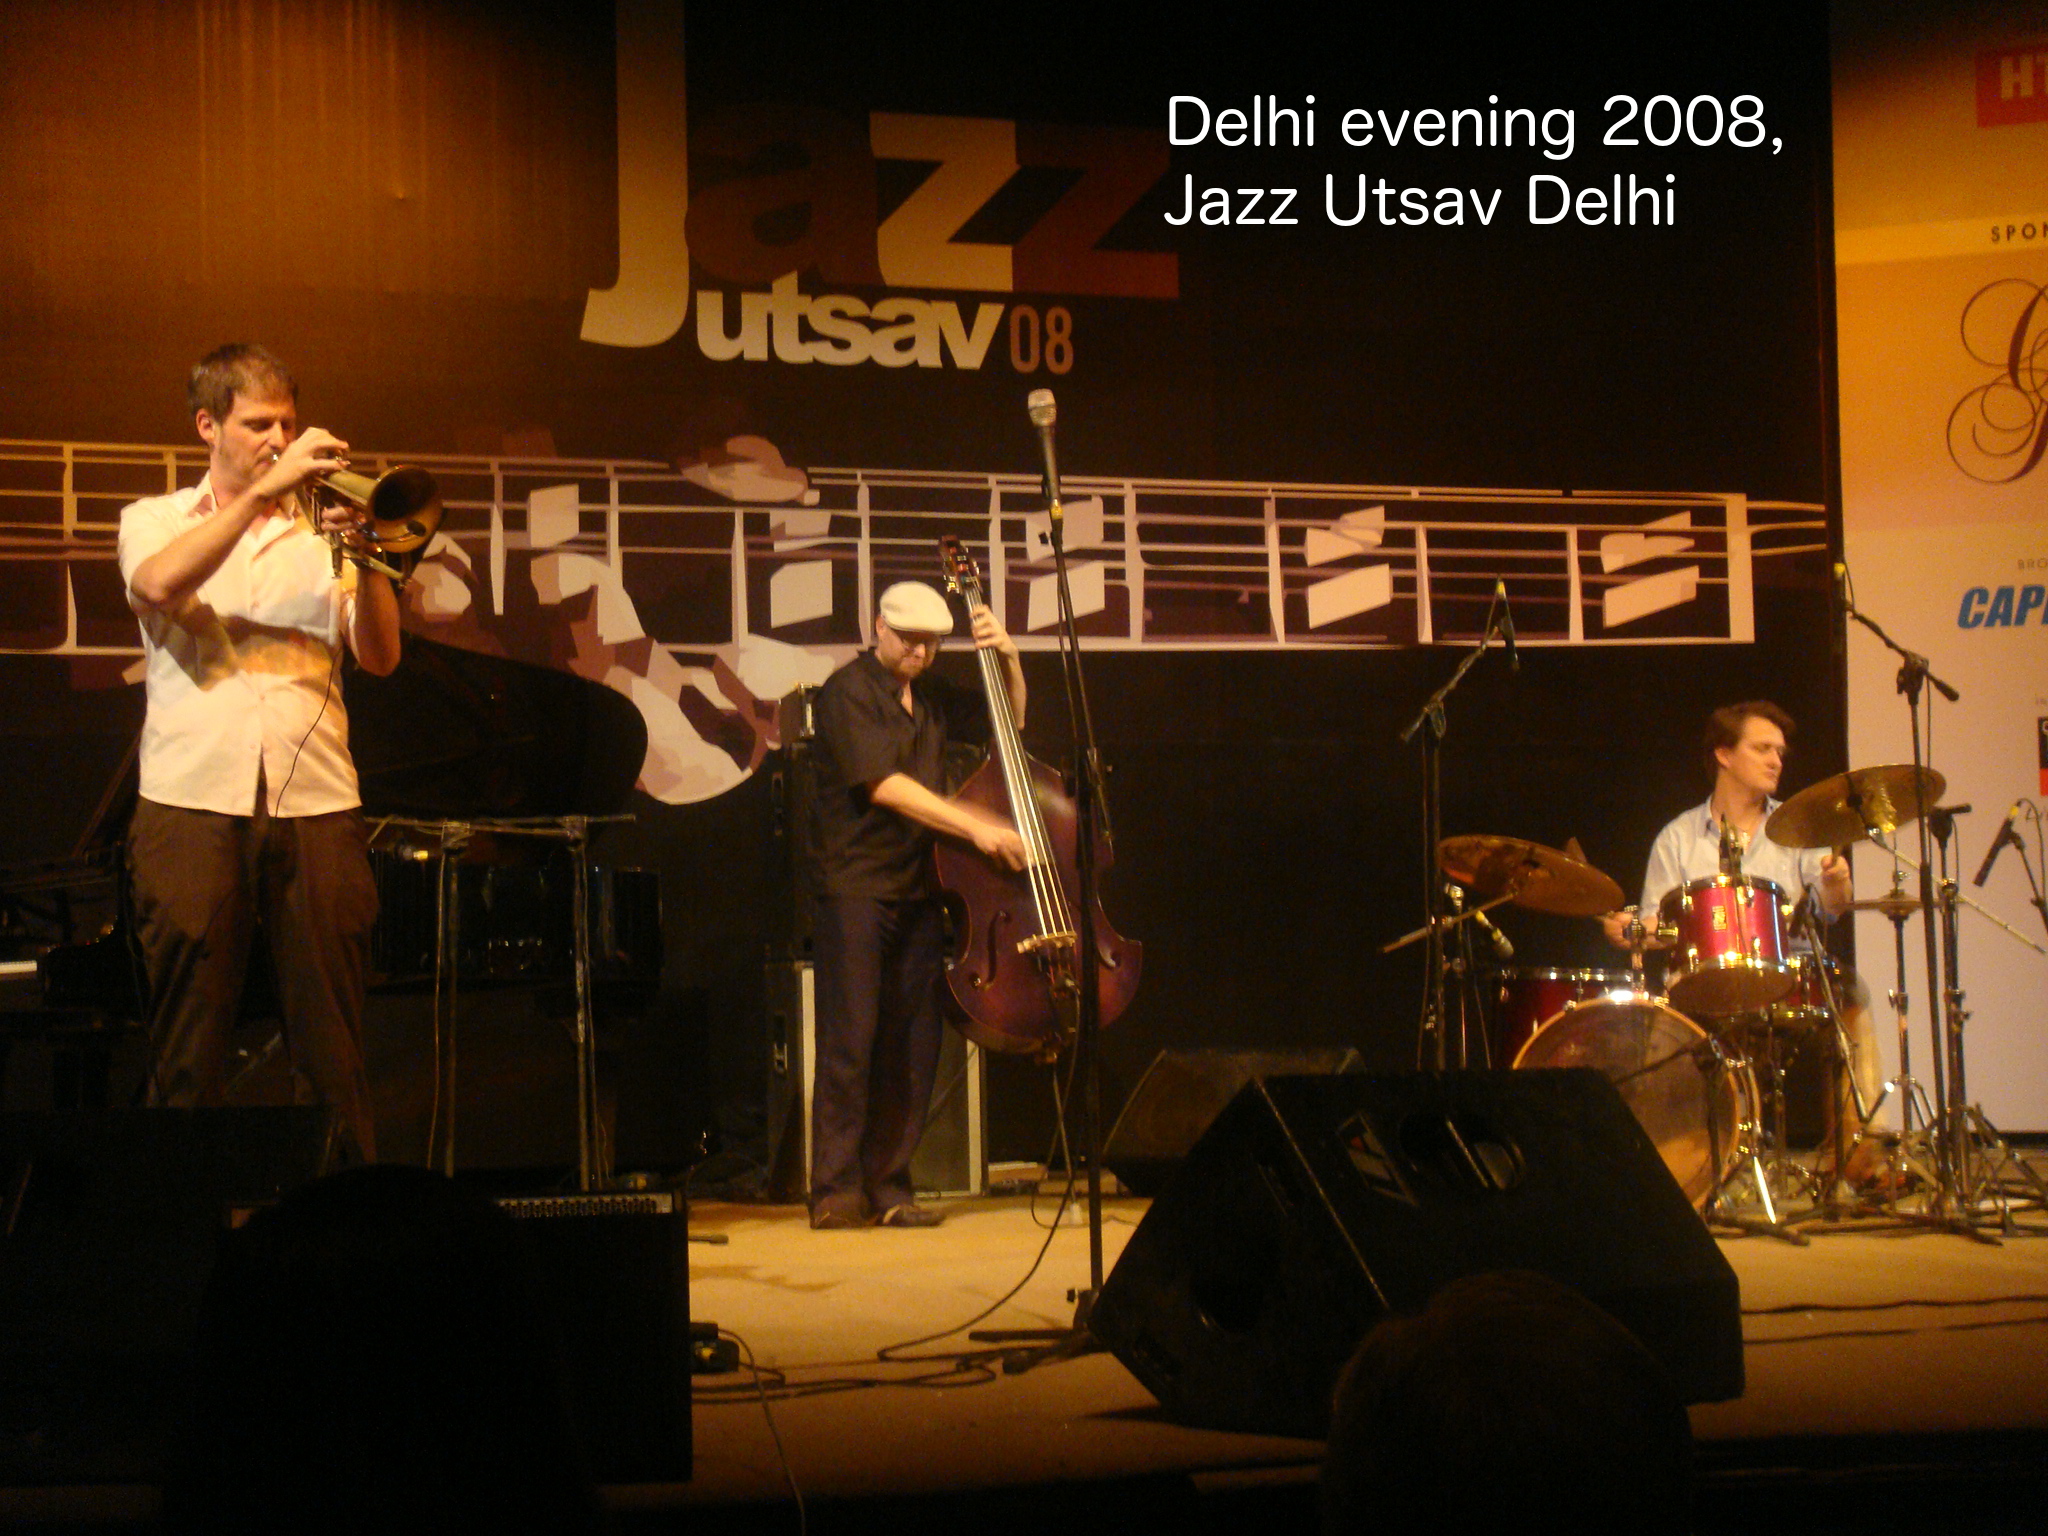 Delhi evening 2008